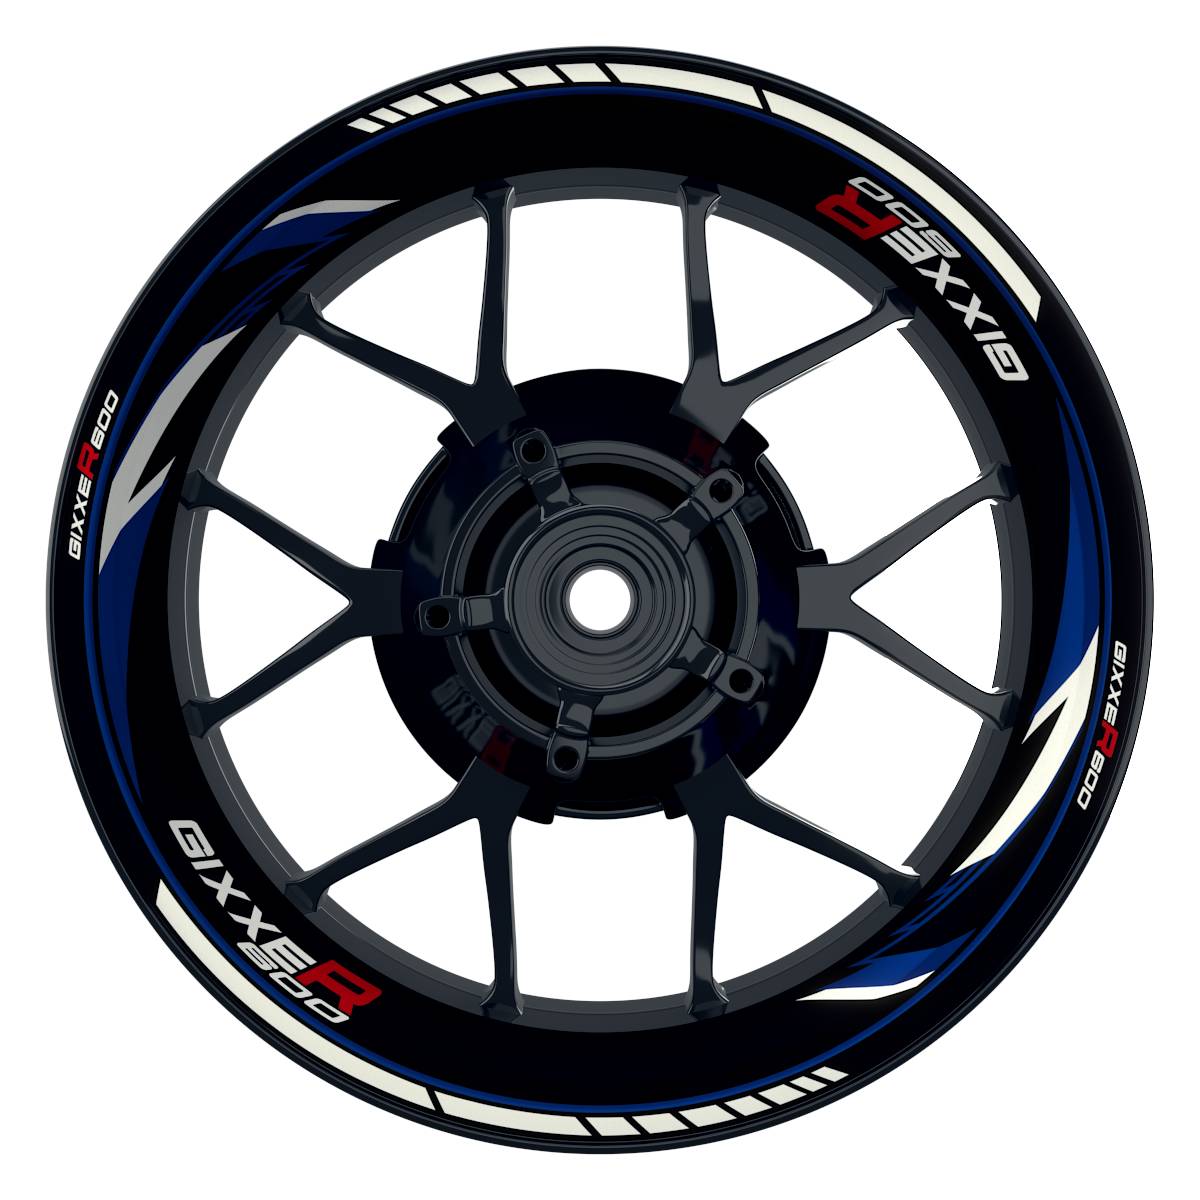 GIXXER600 Razor schwarz blau Wheelsticker Felgenaufkleber